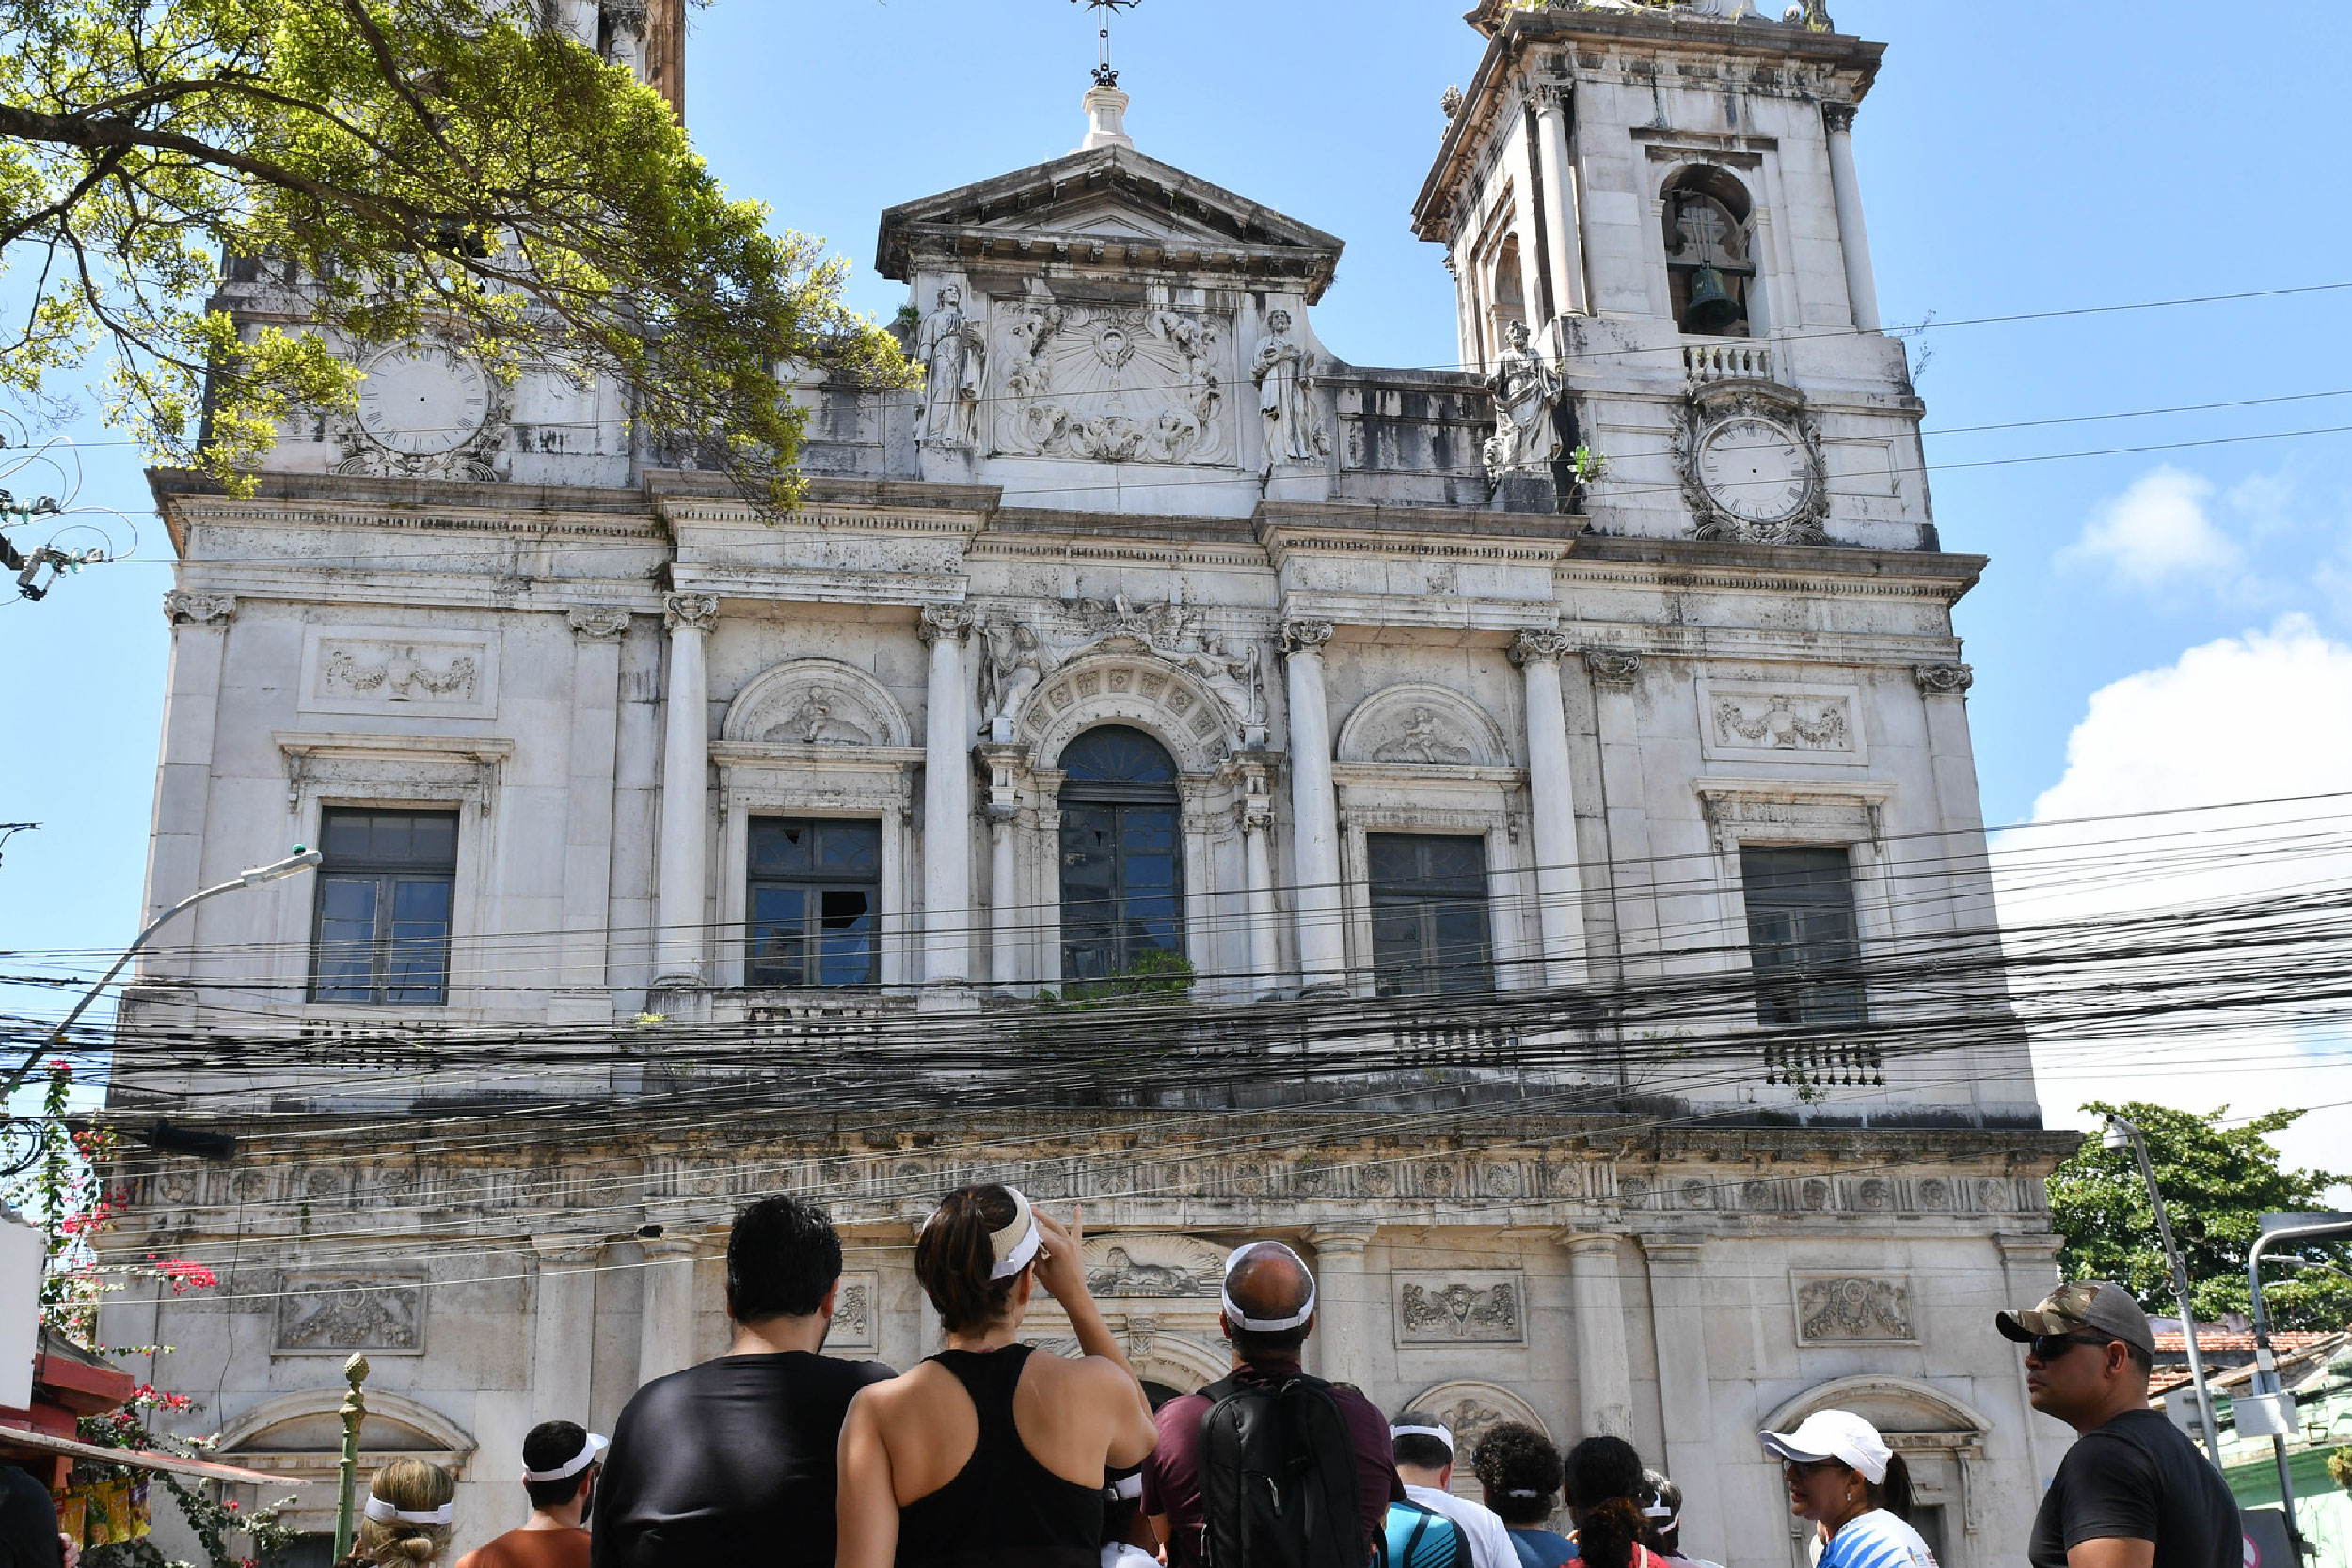 Fotografia de pessoas paradas em frente a uma igreja admirando a fachada